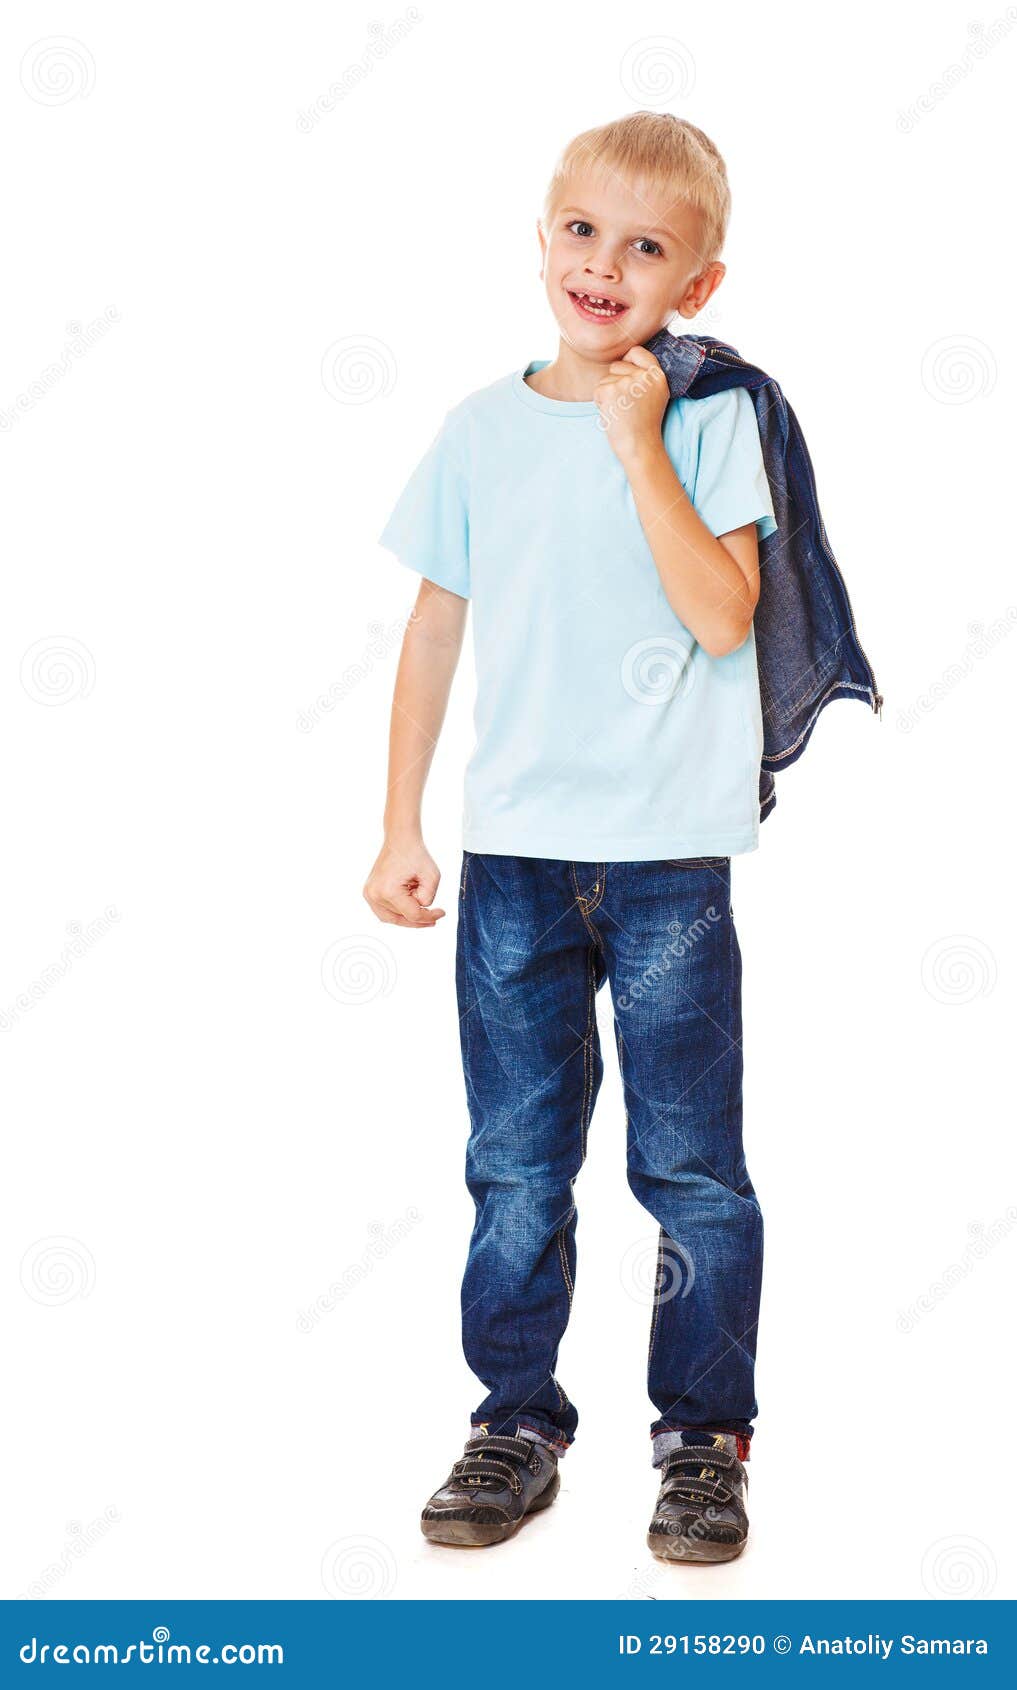 He is wearing jeans. Мальчик смеется во весь рост. Ребенок в свободных синих джинсах. He Wears Jeans.